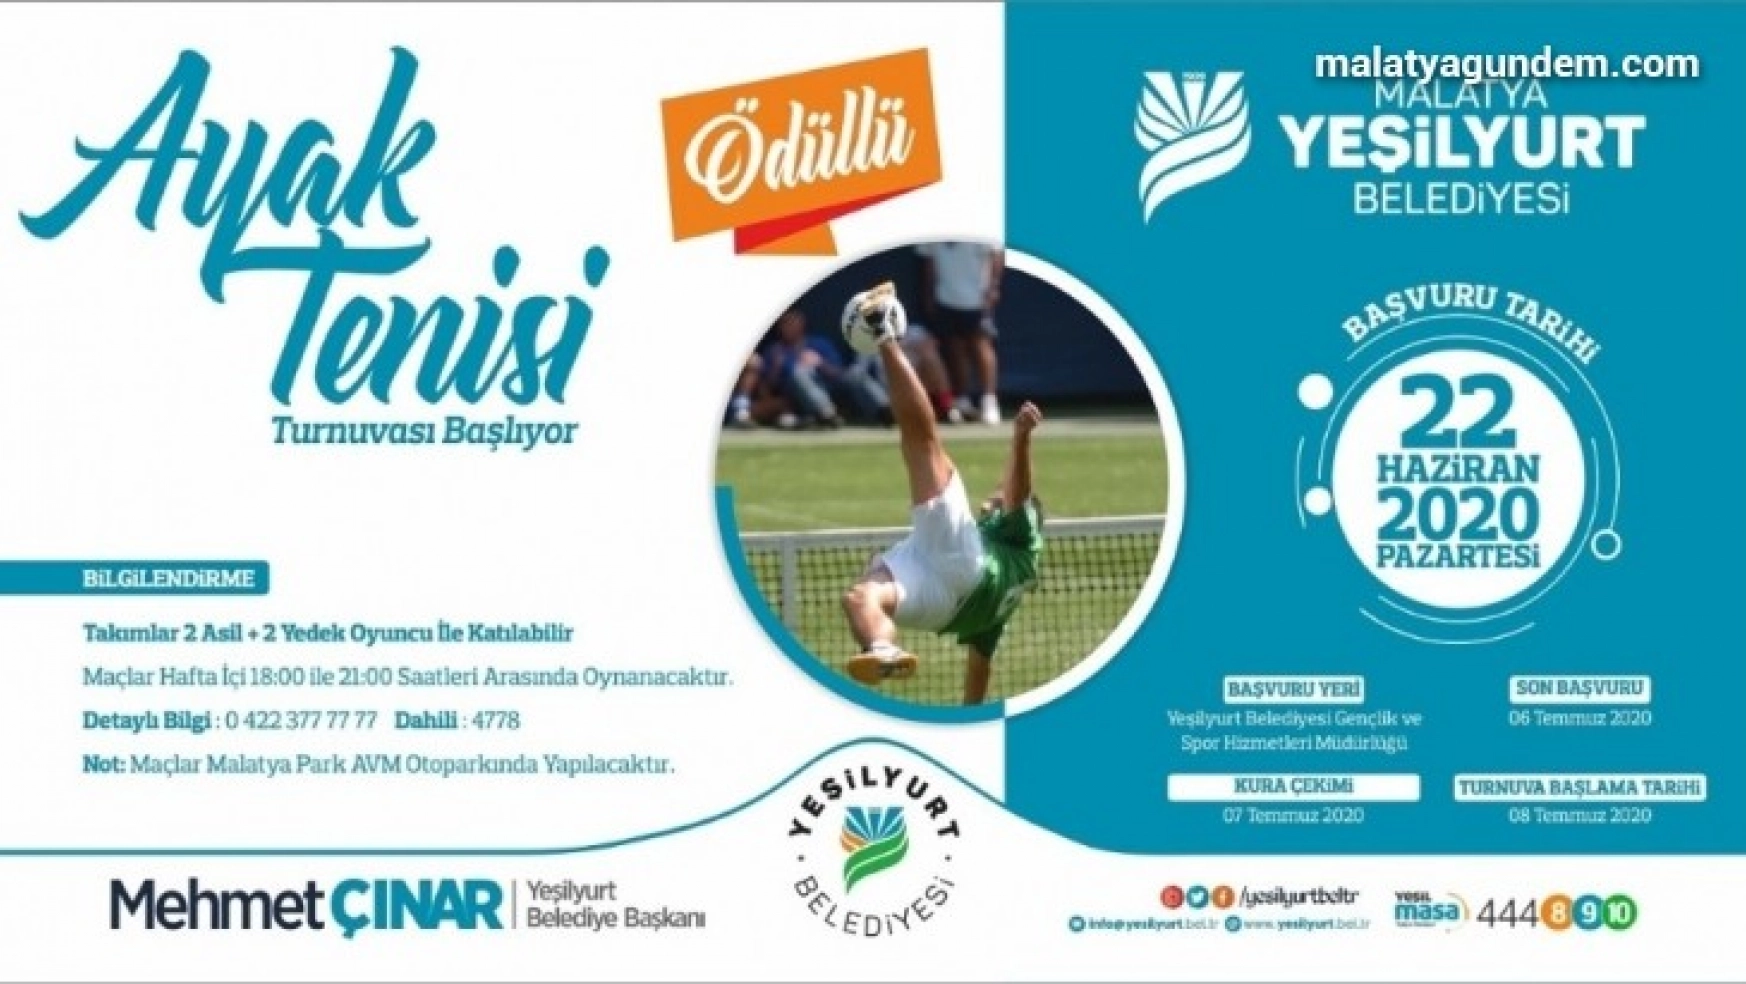 Yeşilyurt Belediyesi, ayak tenisi turnuvasıyla sporseverlerle buluşacak